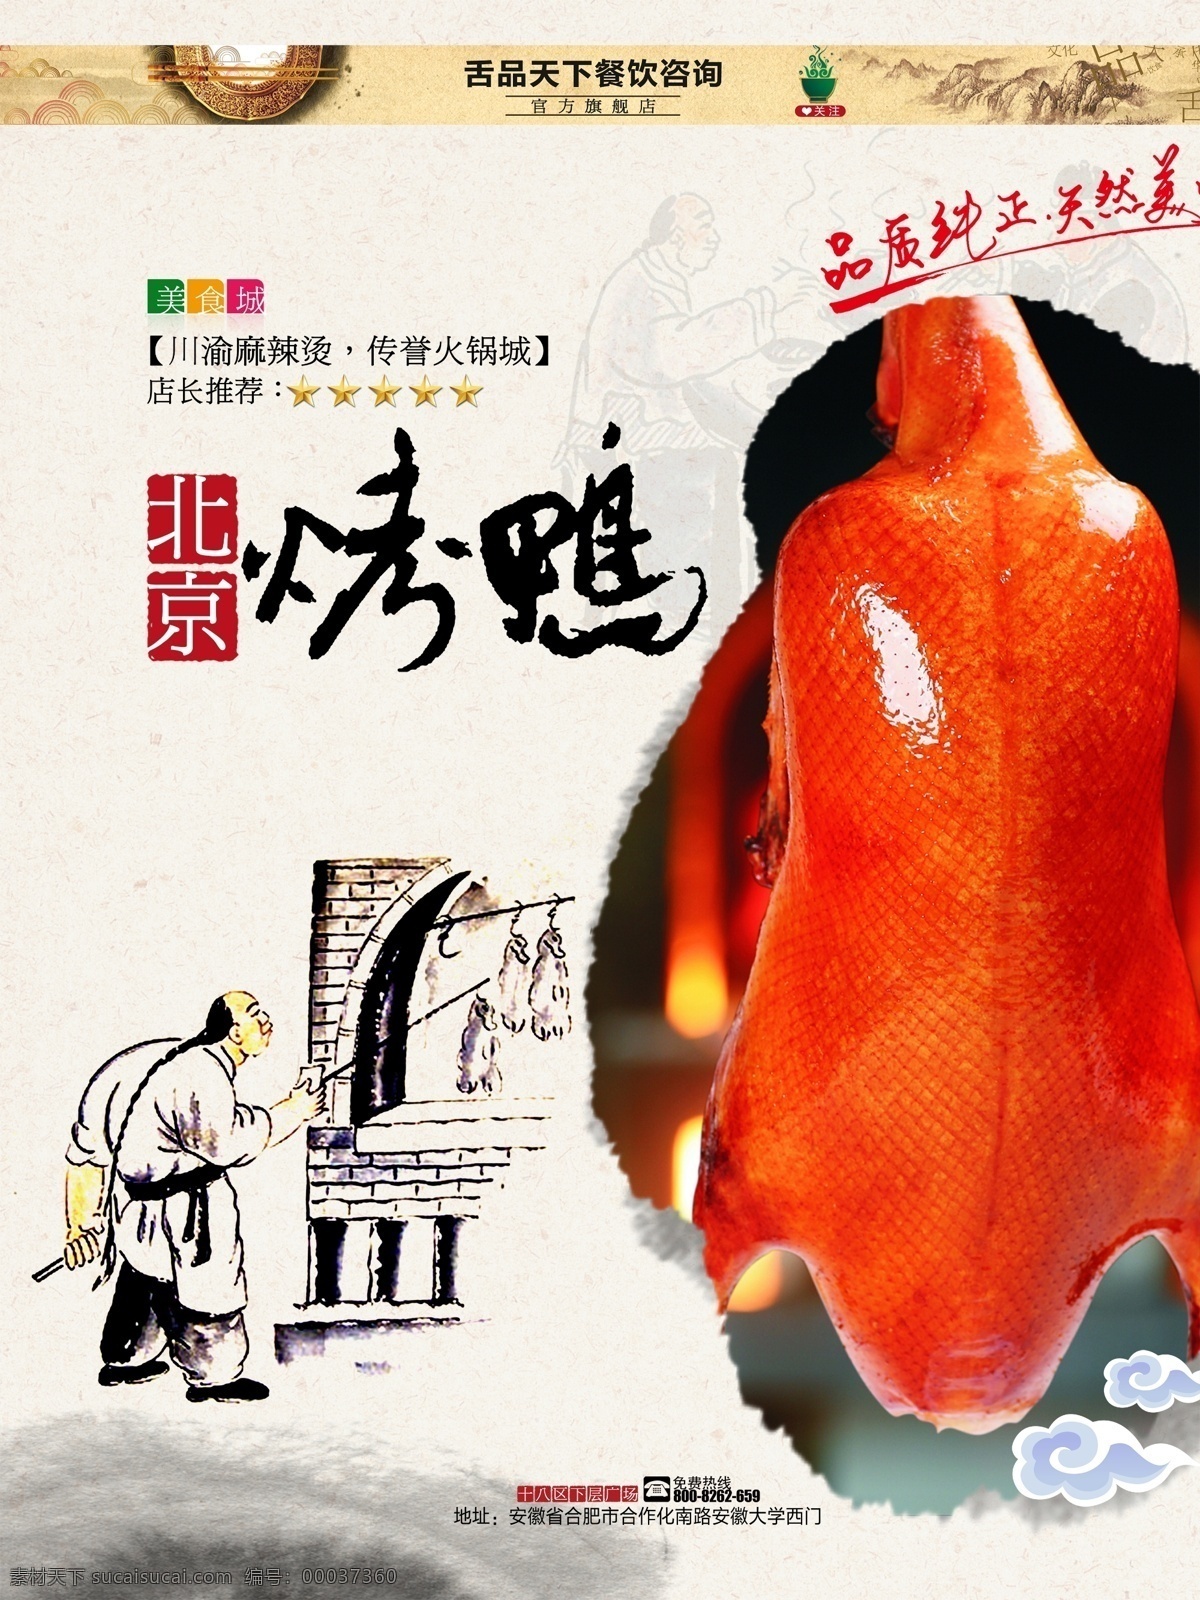 北京 烤鸭 美食 海报 中国风 插画 特色美食 广告